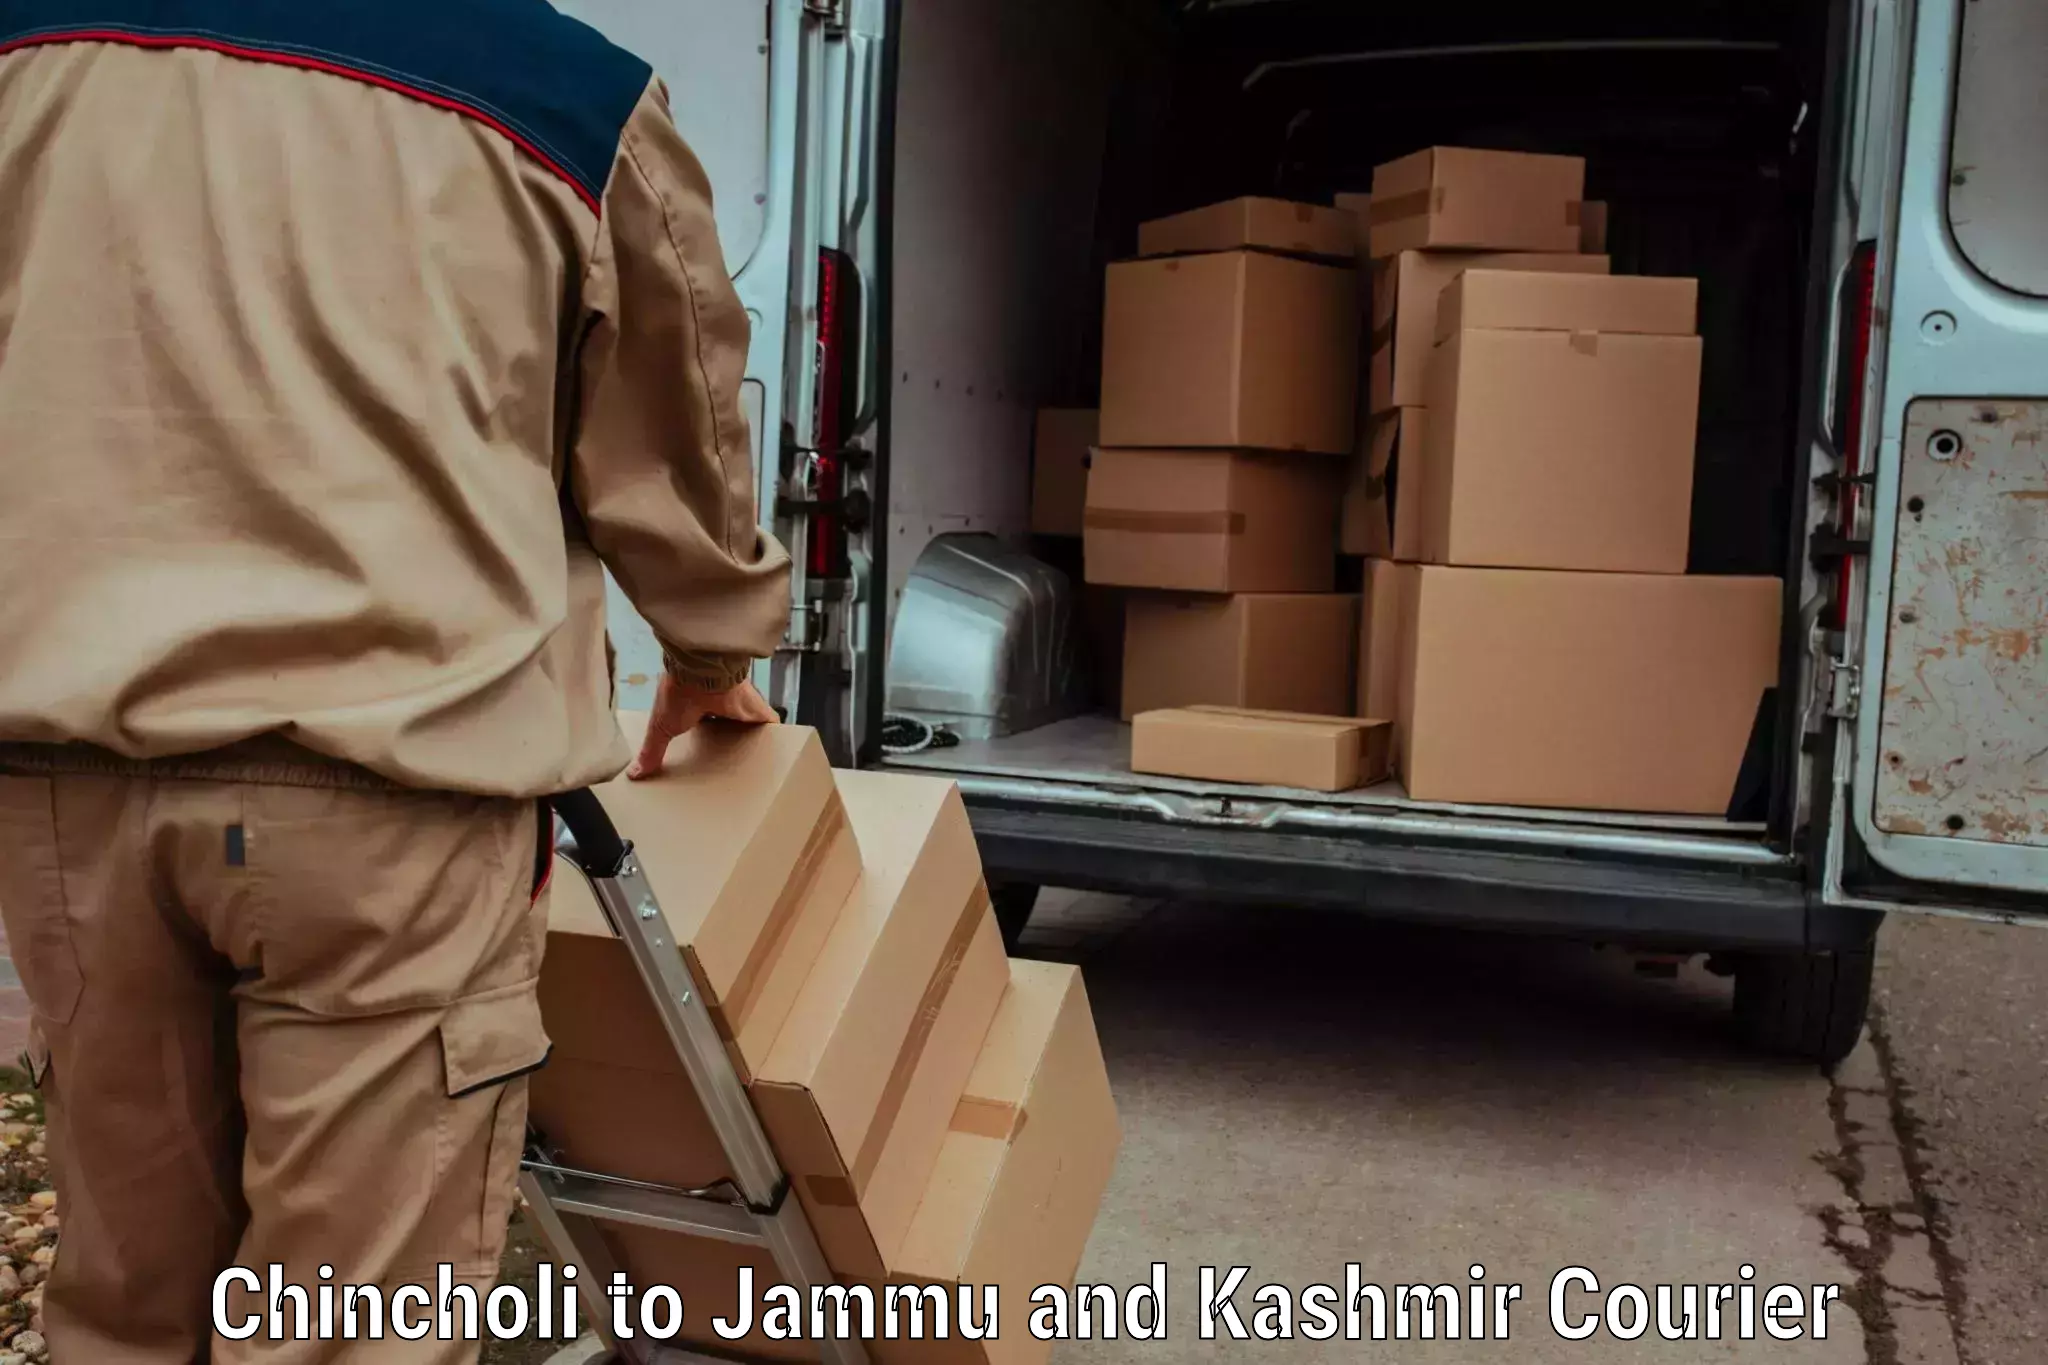 Express logistics in Chincholi to Srinagar Kashmir